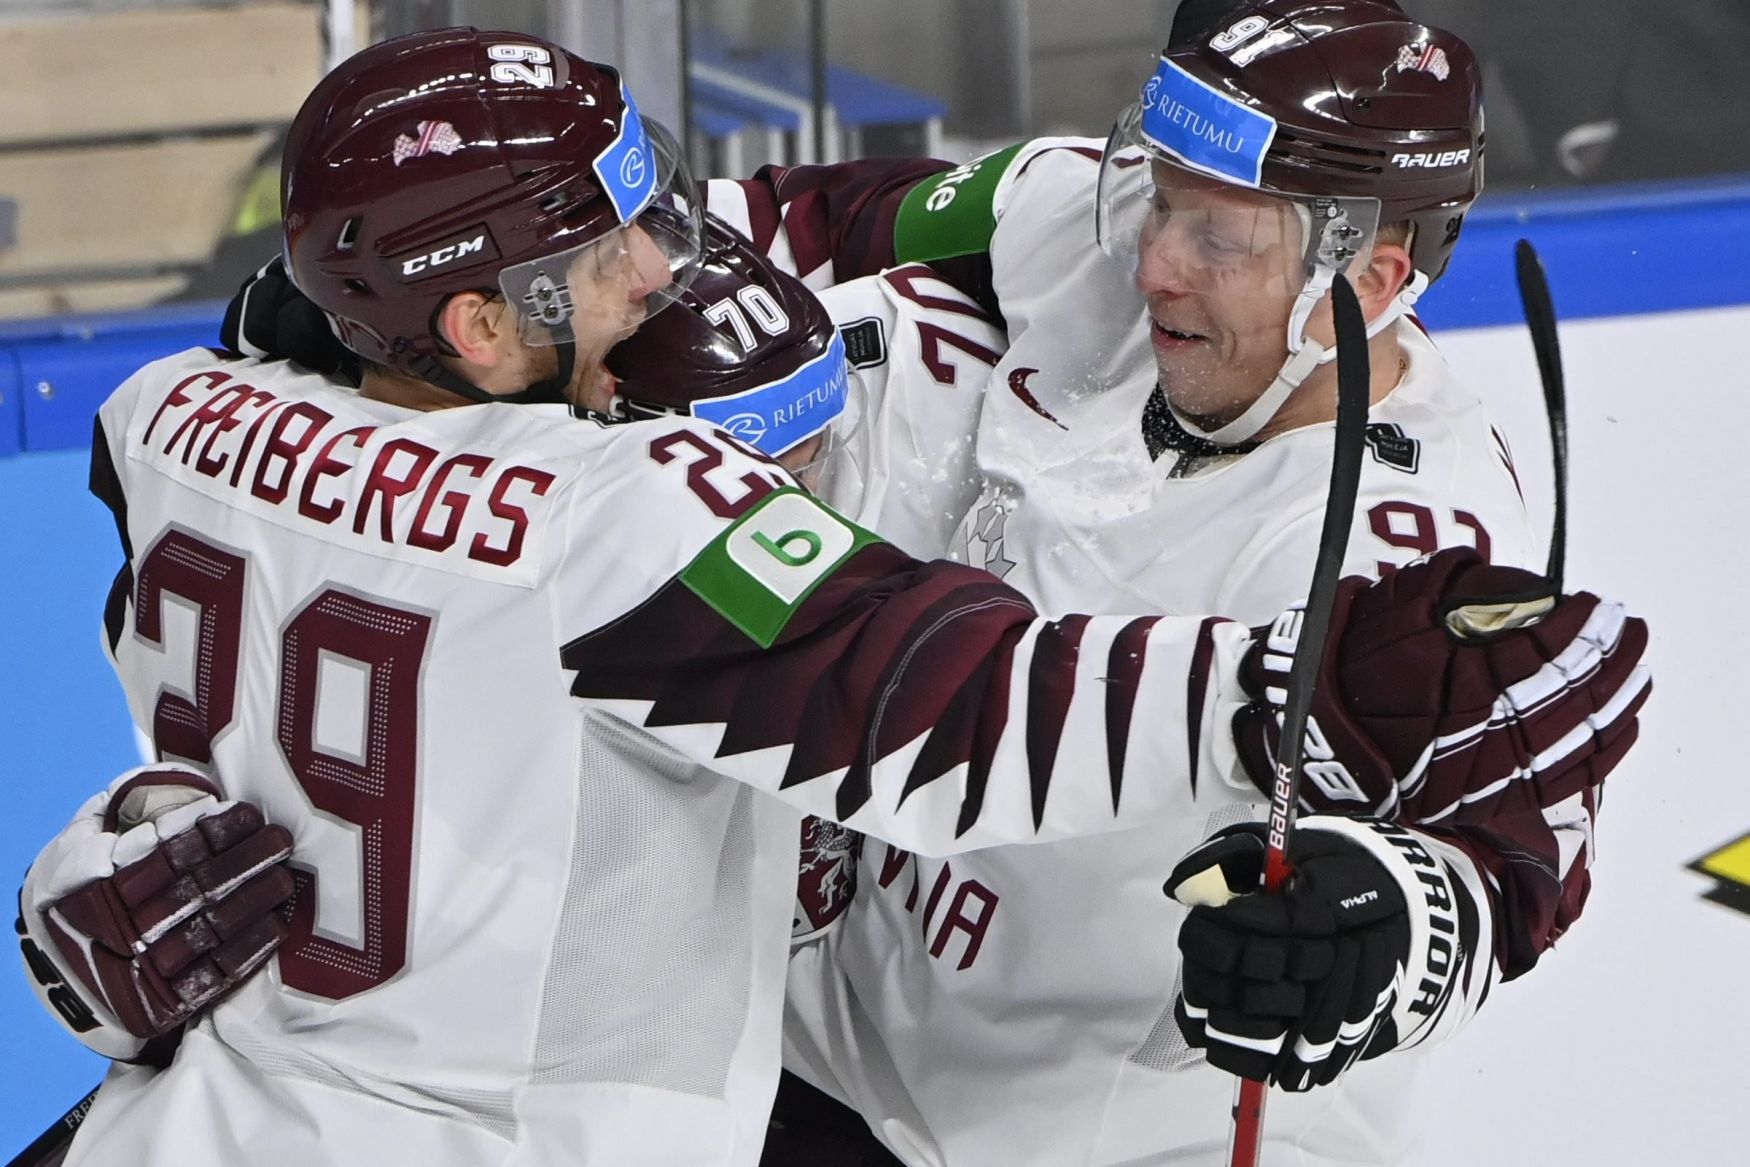 Erste Aktion der Meisterschaft, lettische Eishockeyspieler reifen in Kanada